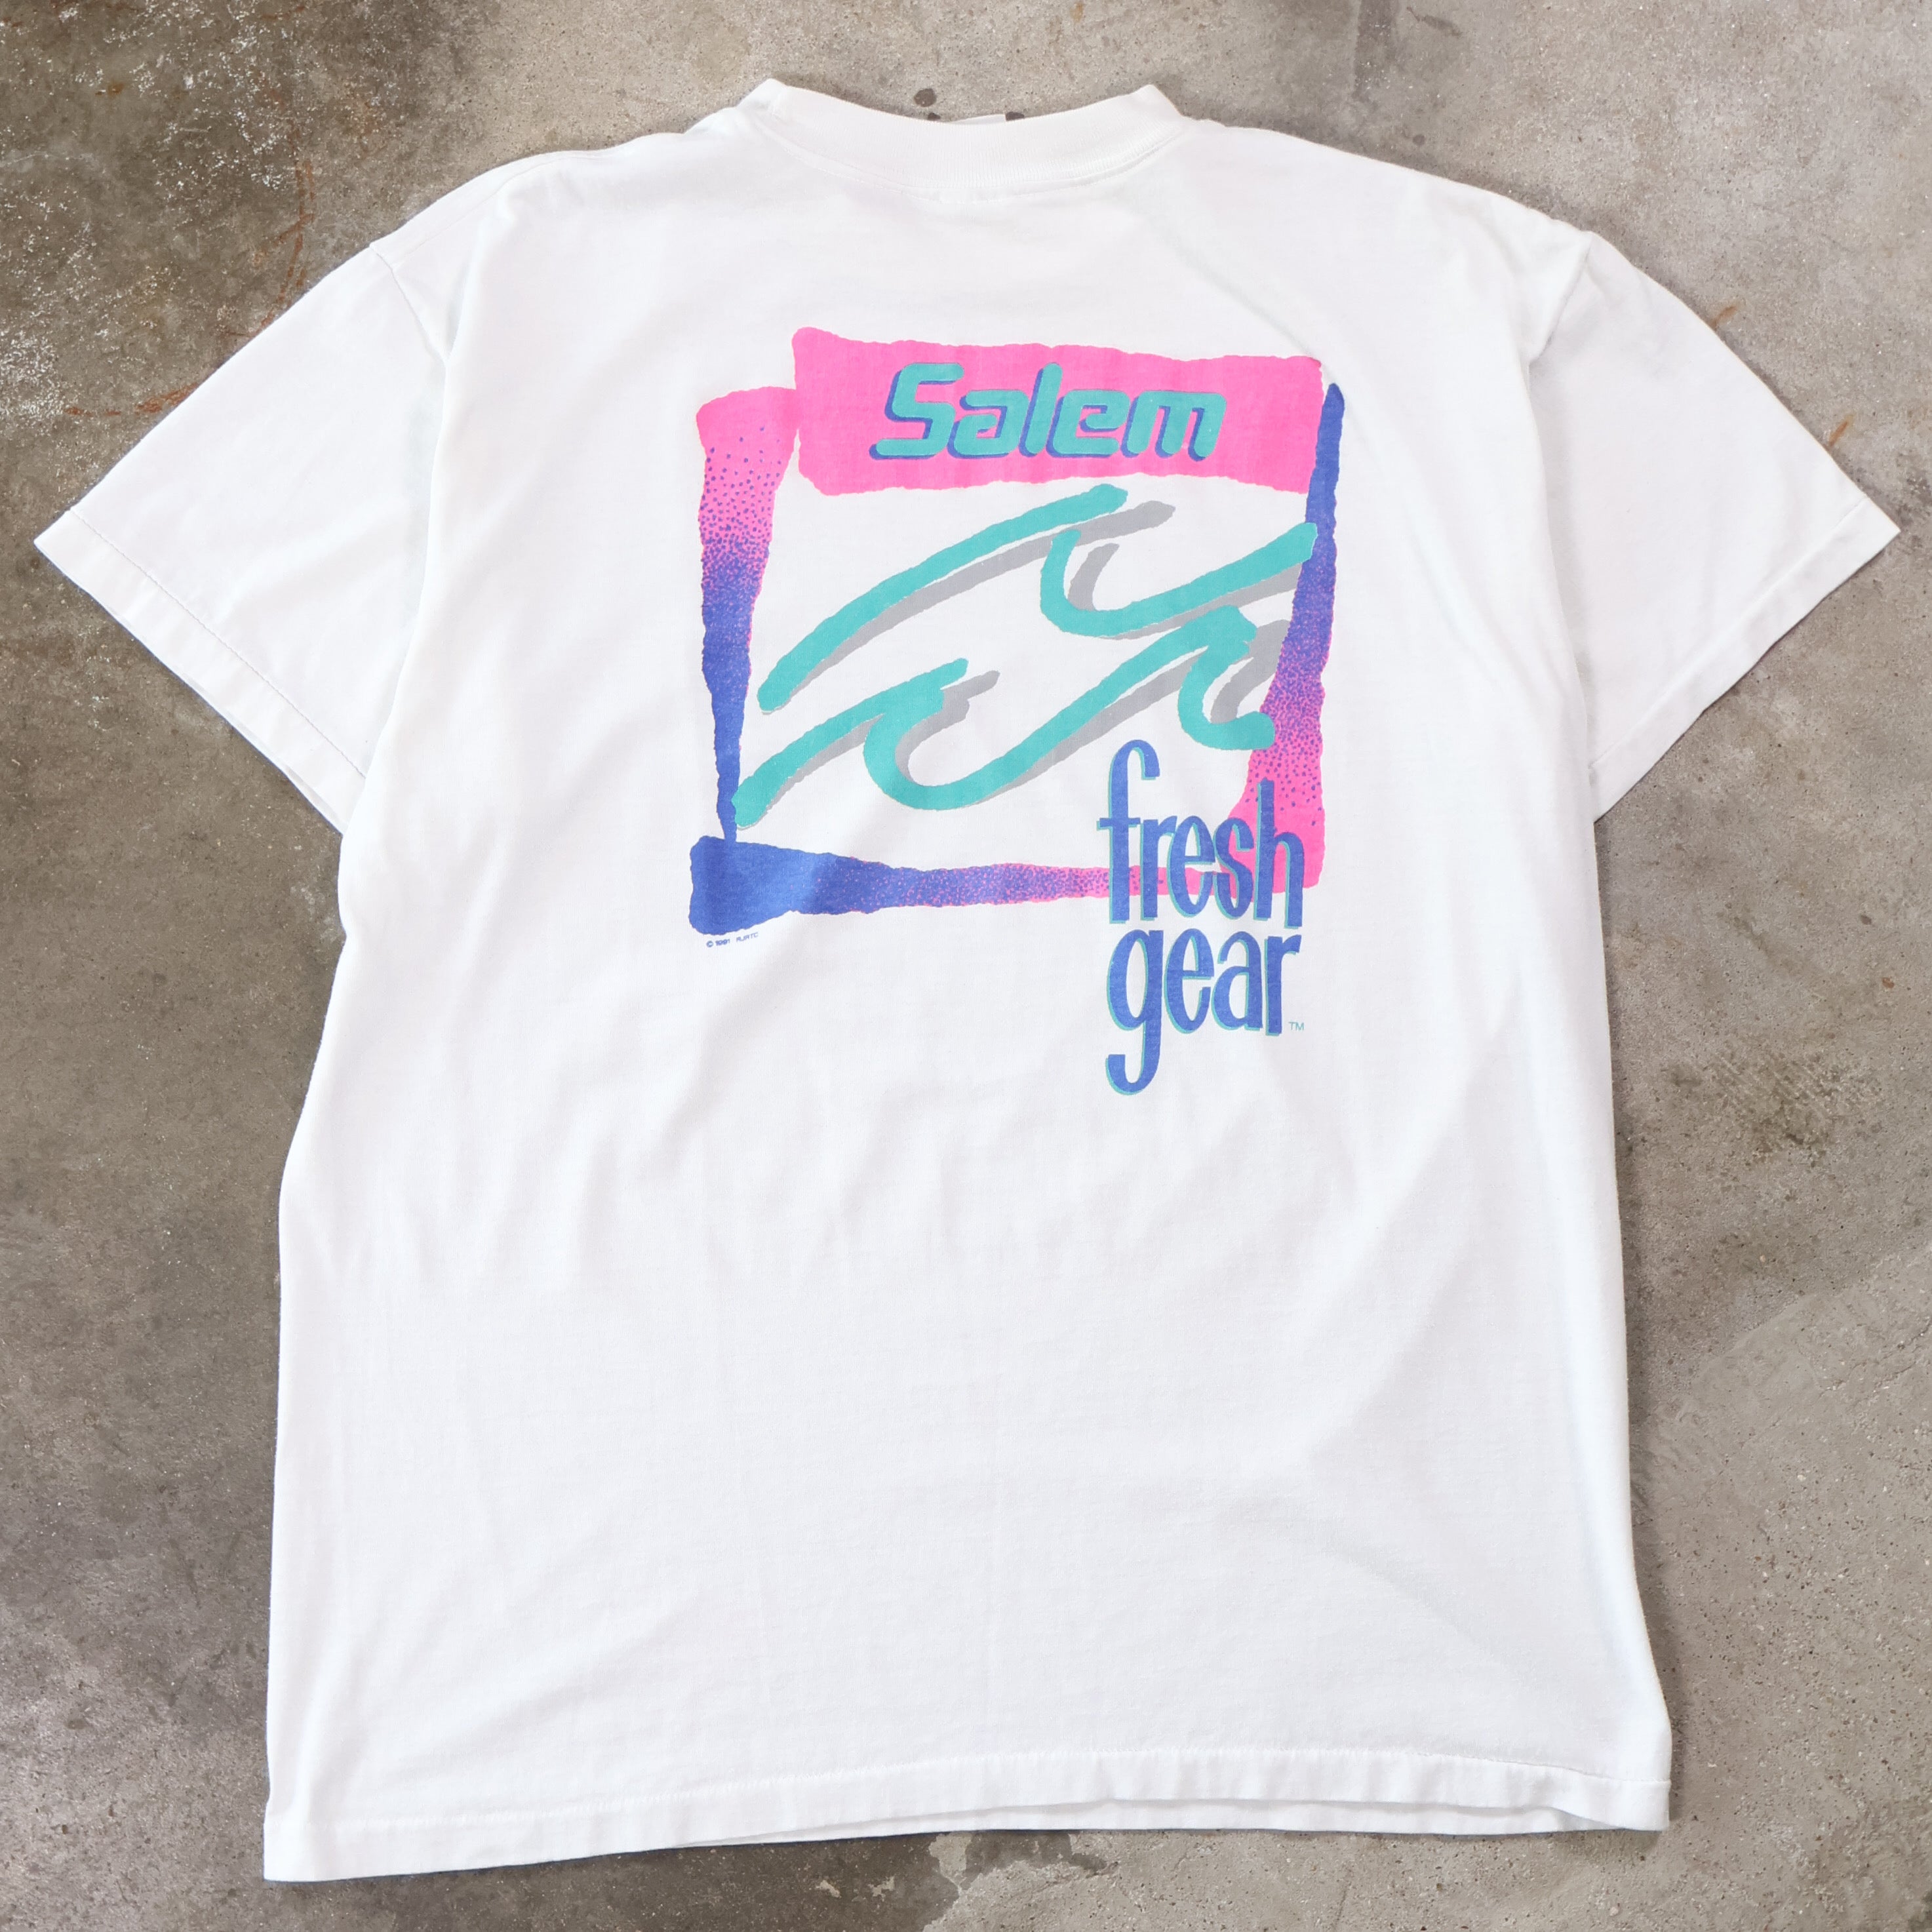 Salem Fresh Gear T-Shirt 1991 (Large)